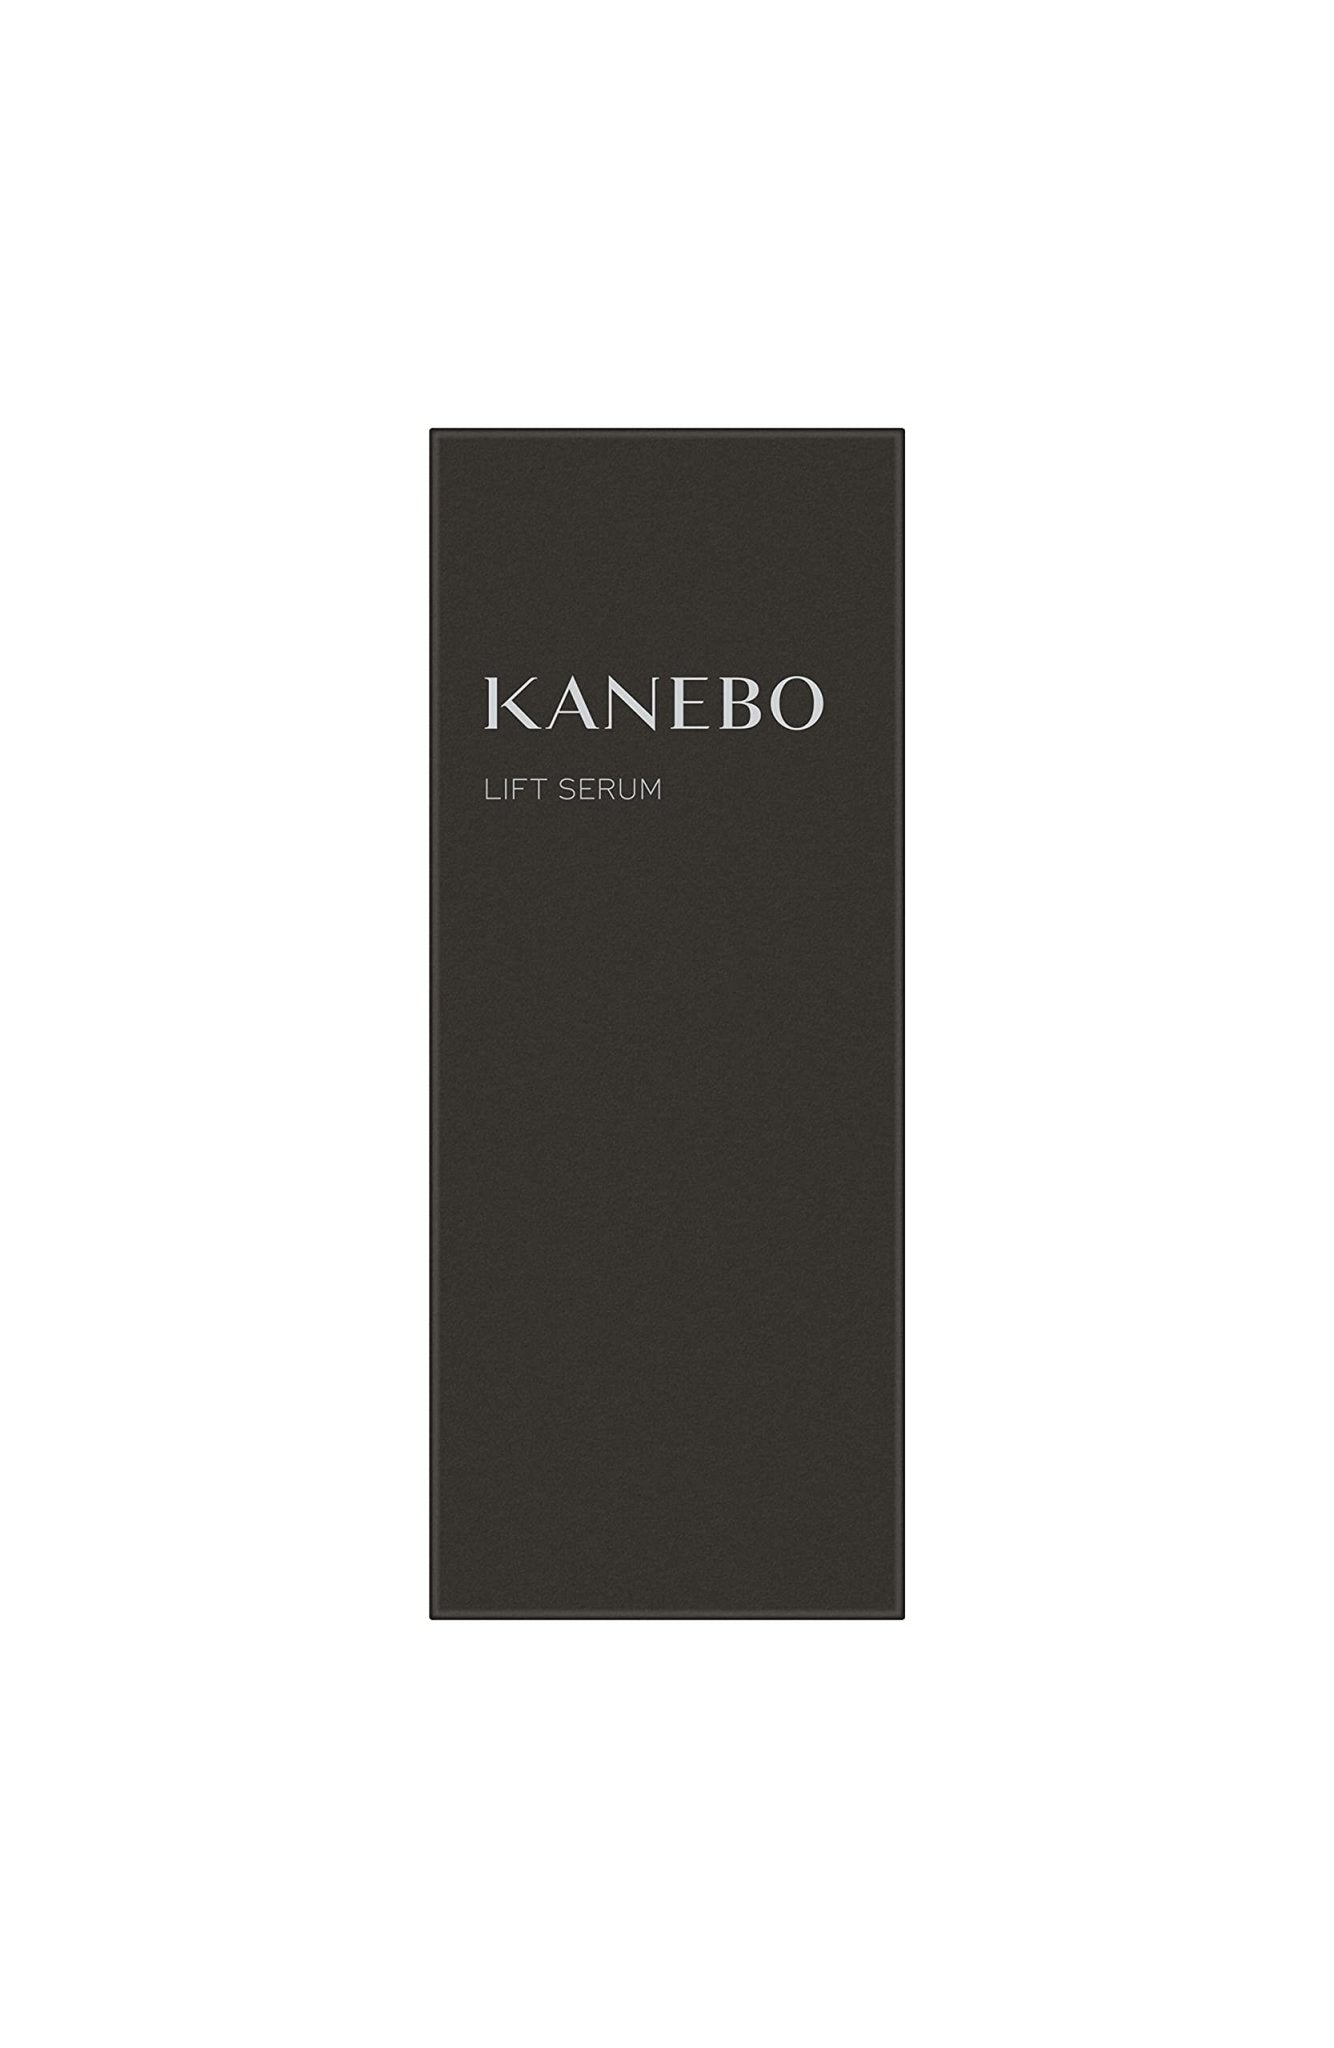 Canmake Lasting Liquid Liner 05 Greige 0.5ml - Japanese Liquid Eyeliner - Eyes Makeup - YOYO JAPAN